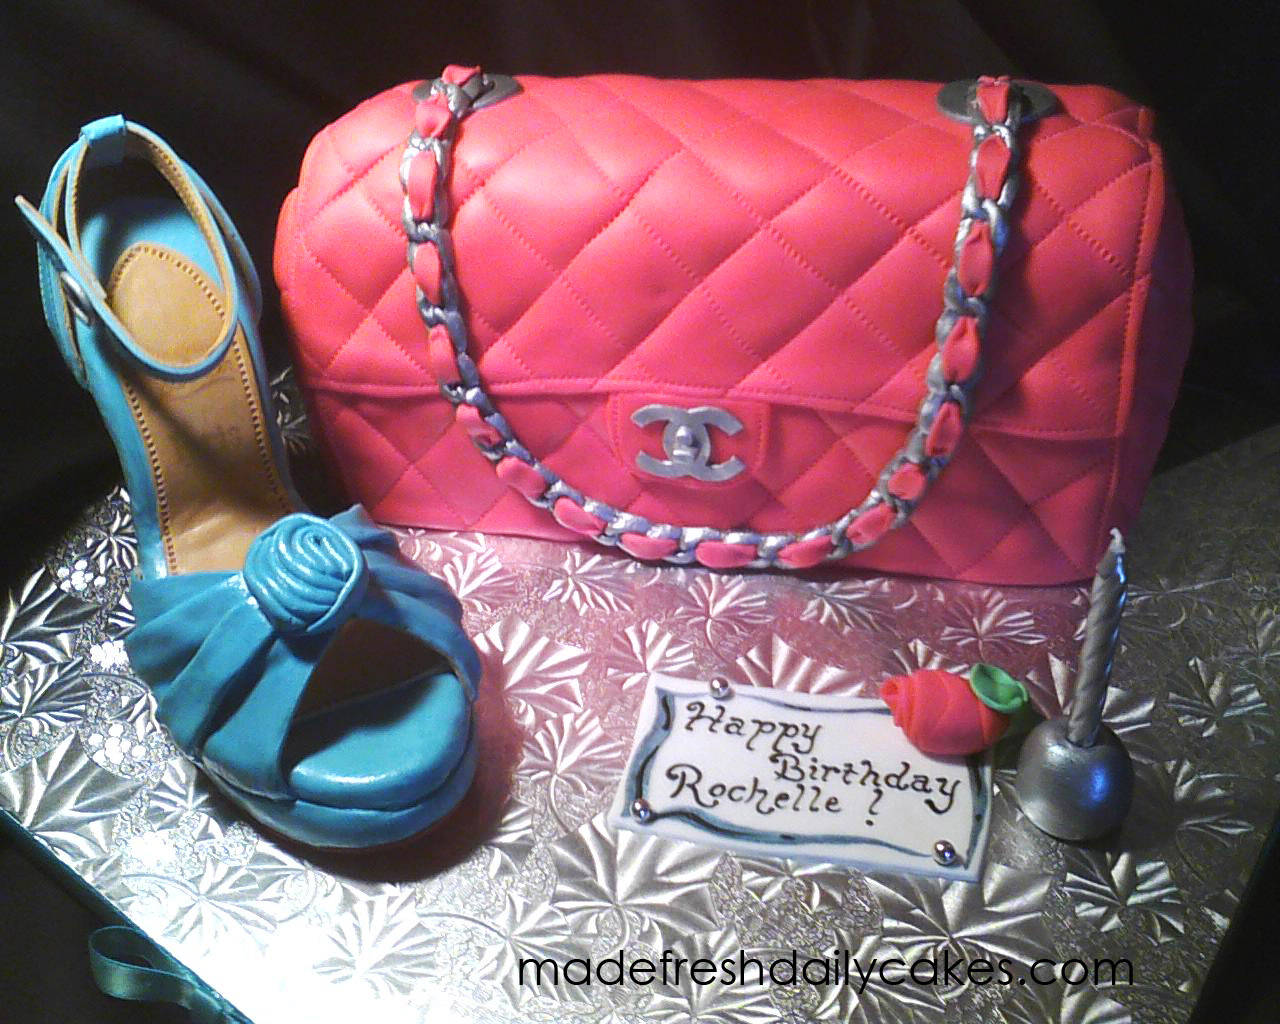 Pink Chanel Handbag Cake!